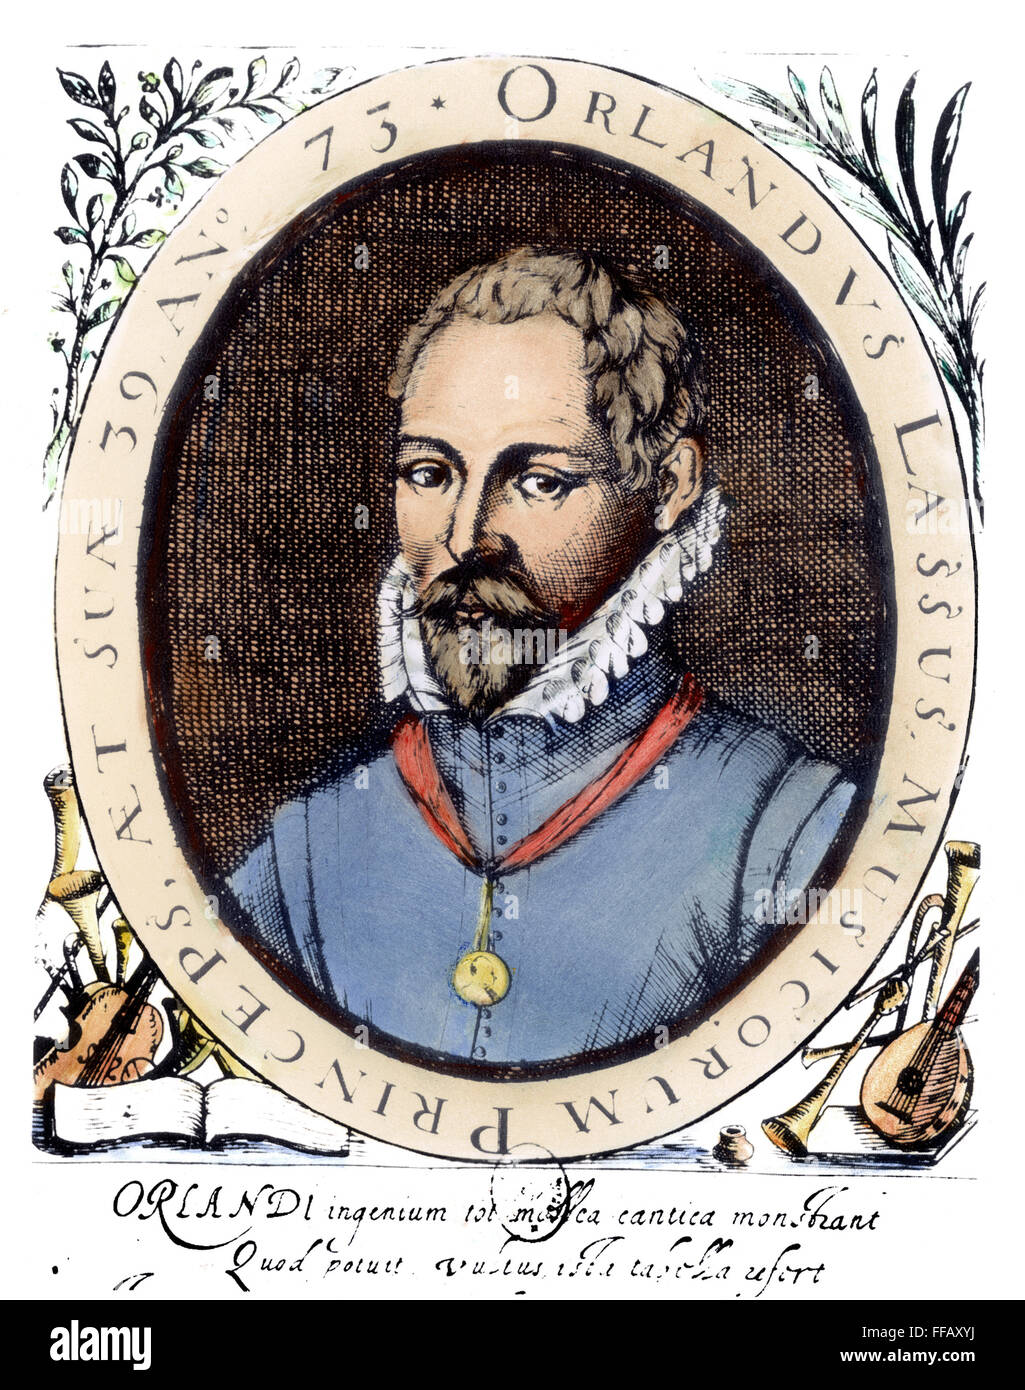 ORLANDO di lasso (1532-1594). NFlemish /compositeur. La gravure, la ligne 1573. Banque D'Images